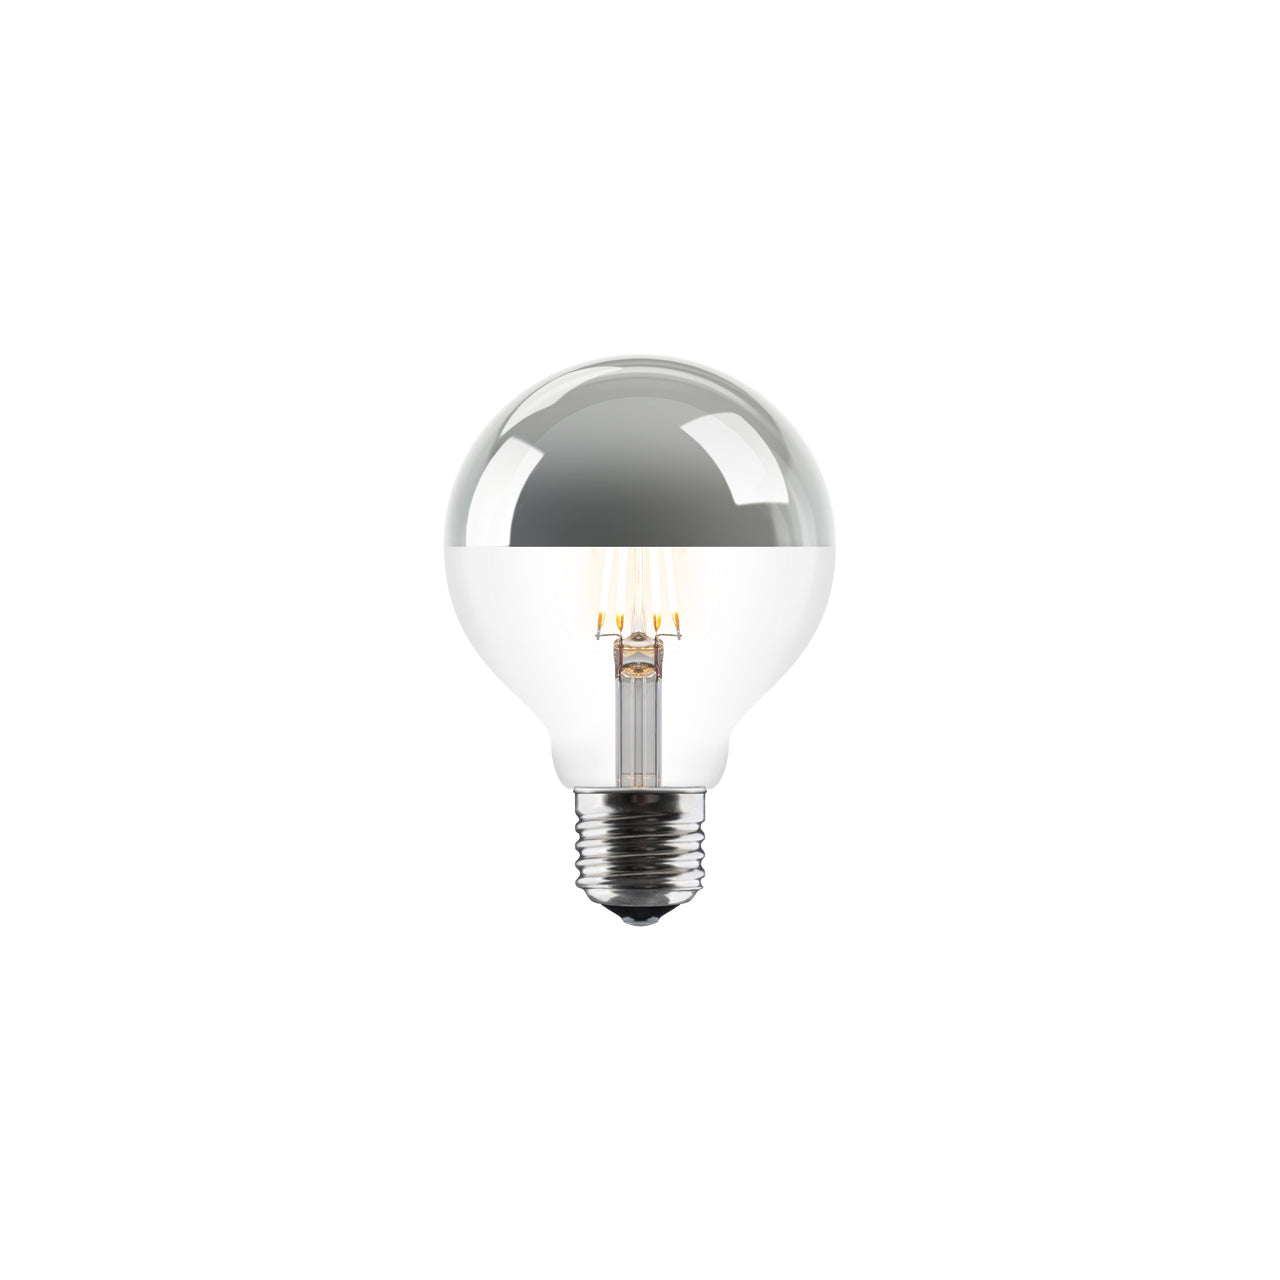 Idea LED Bulb Series: 7 W